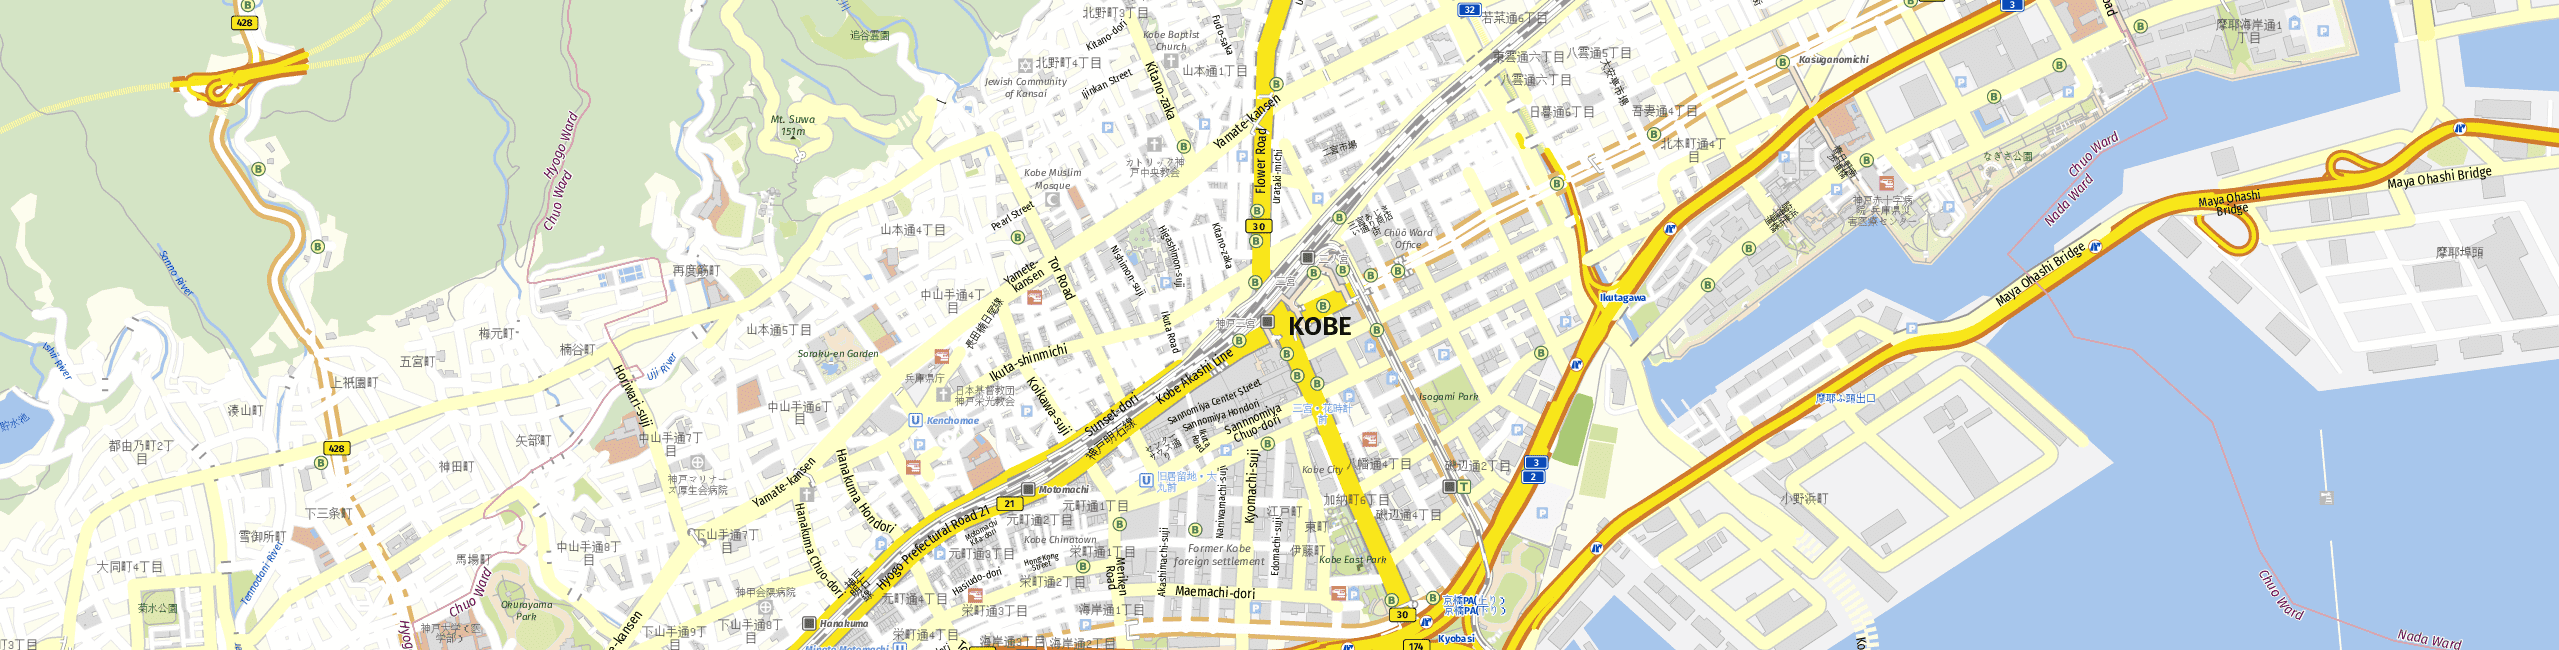 Stadtplan Kobe zum Downloaden.